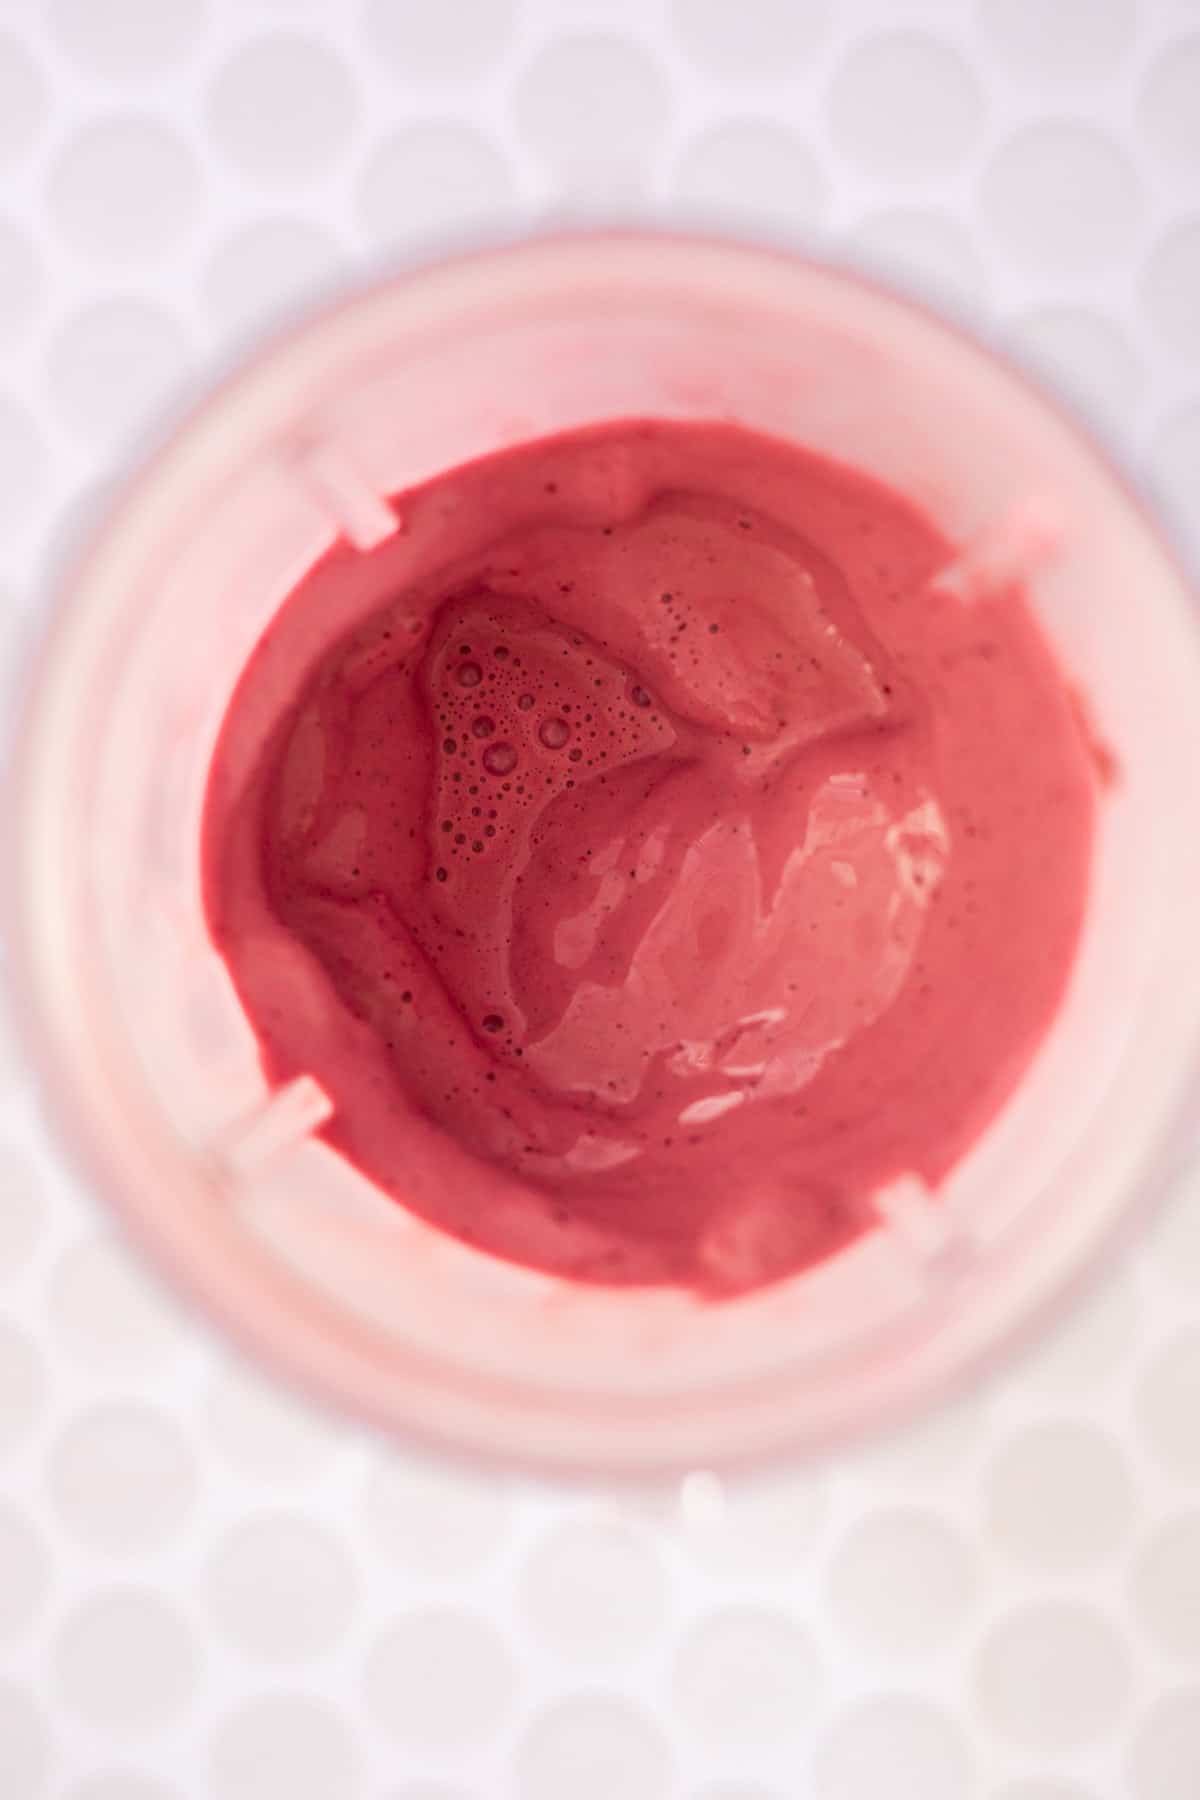 blended cherry milkshake in a blender cup.